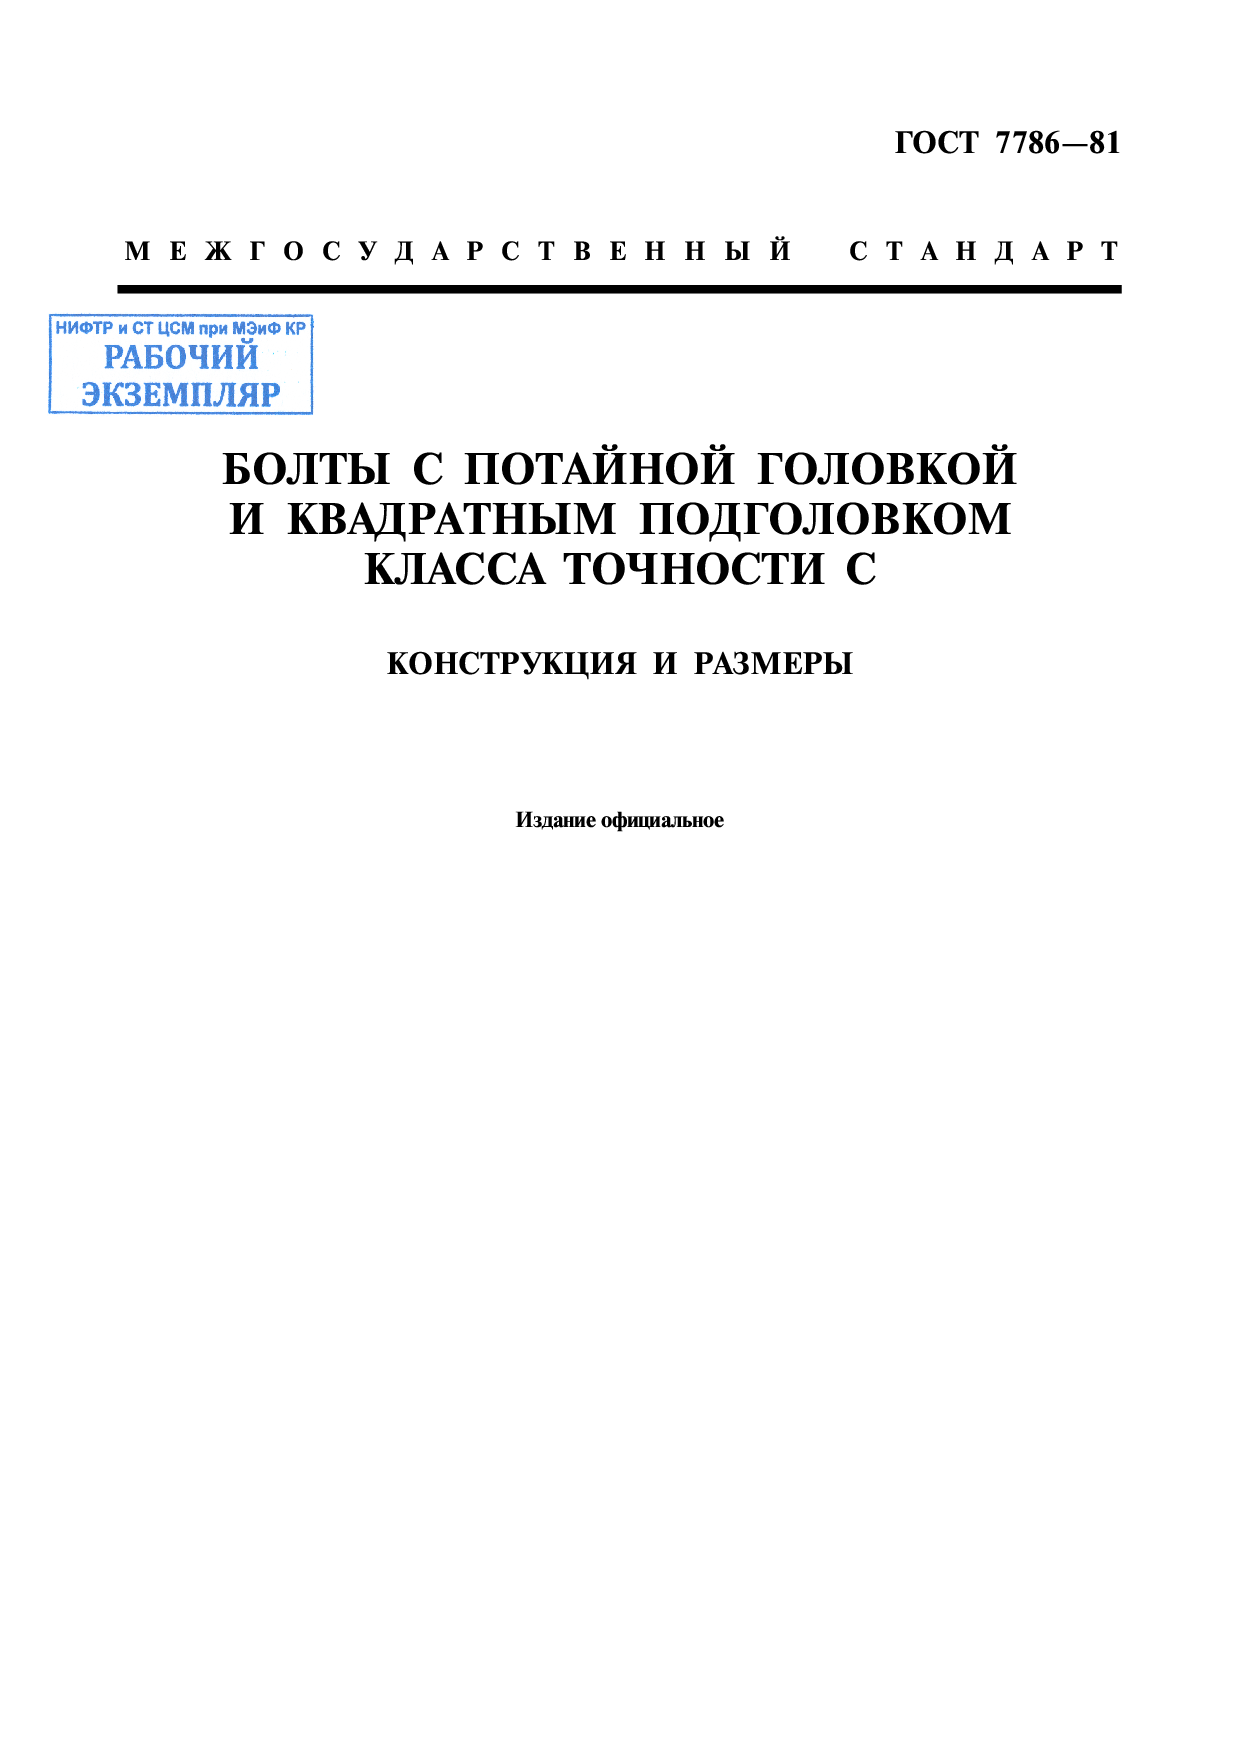 Болты с потайной головкой и квадратным подголовком класса точности С. Конструкция и размеры